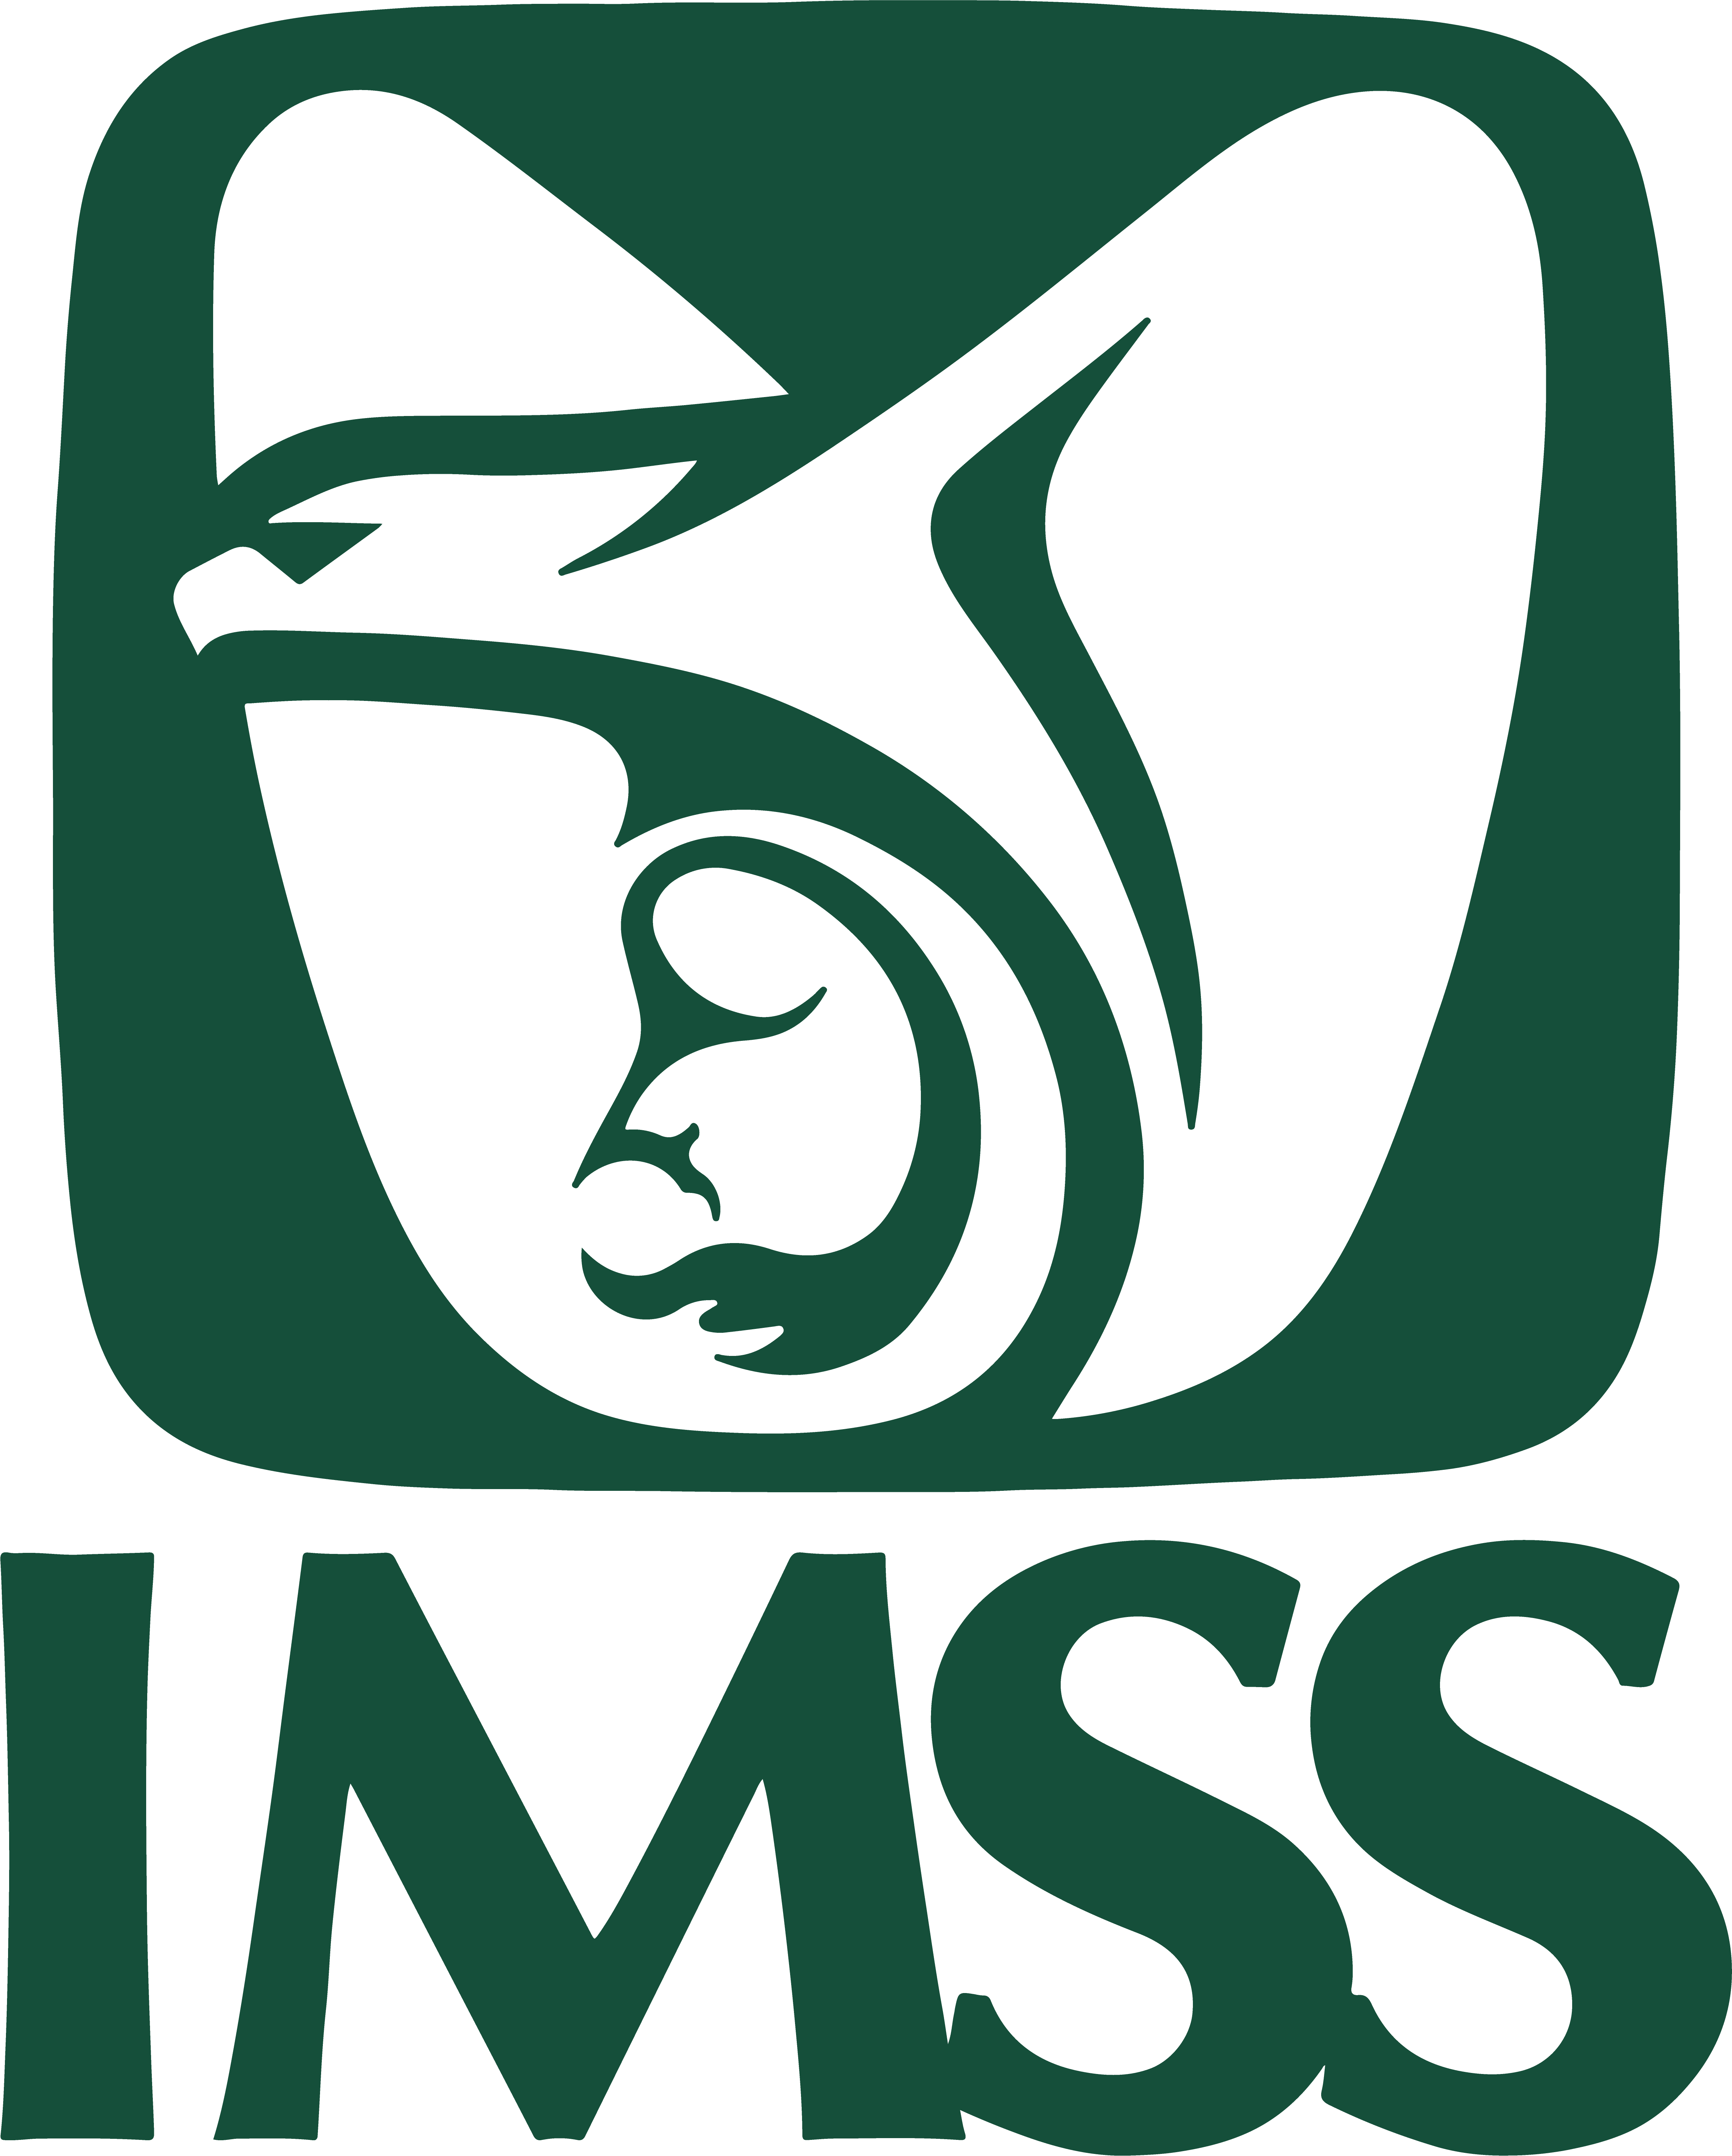 Logo IMSS